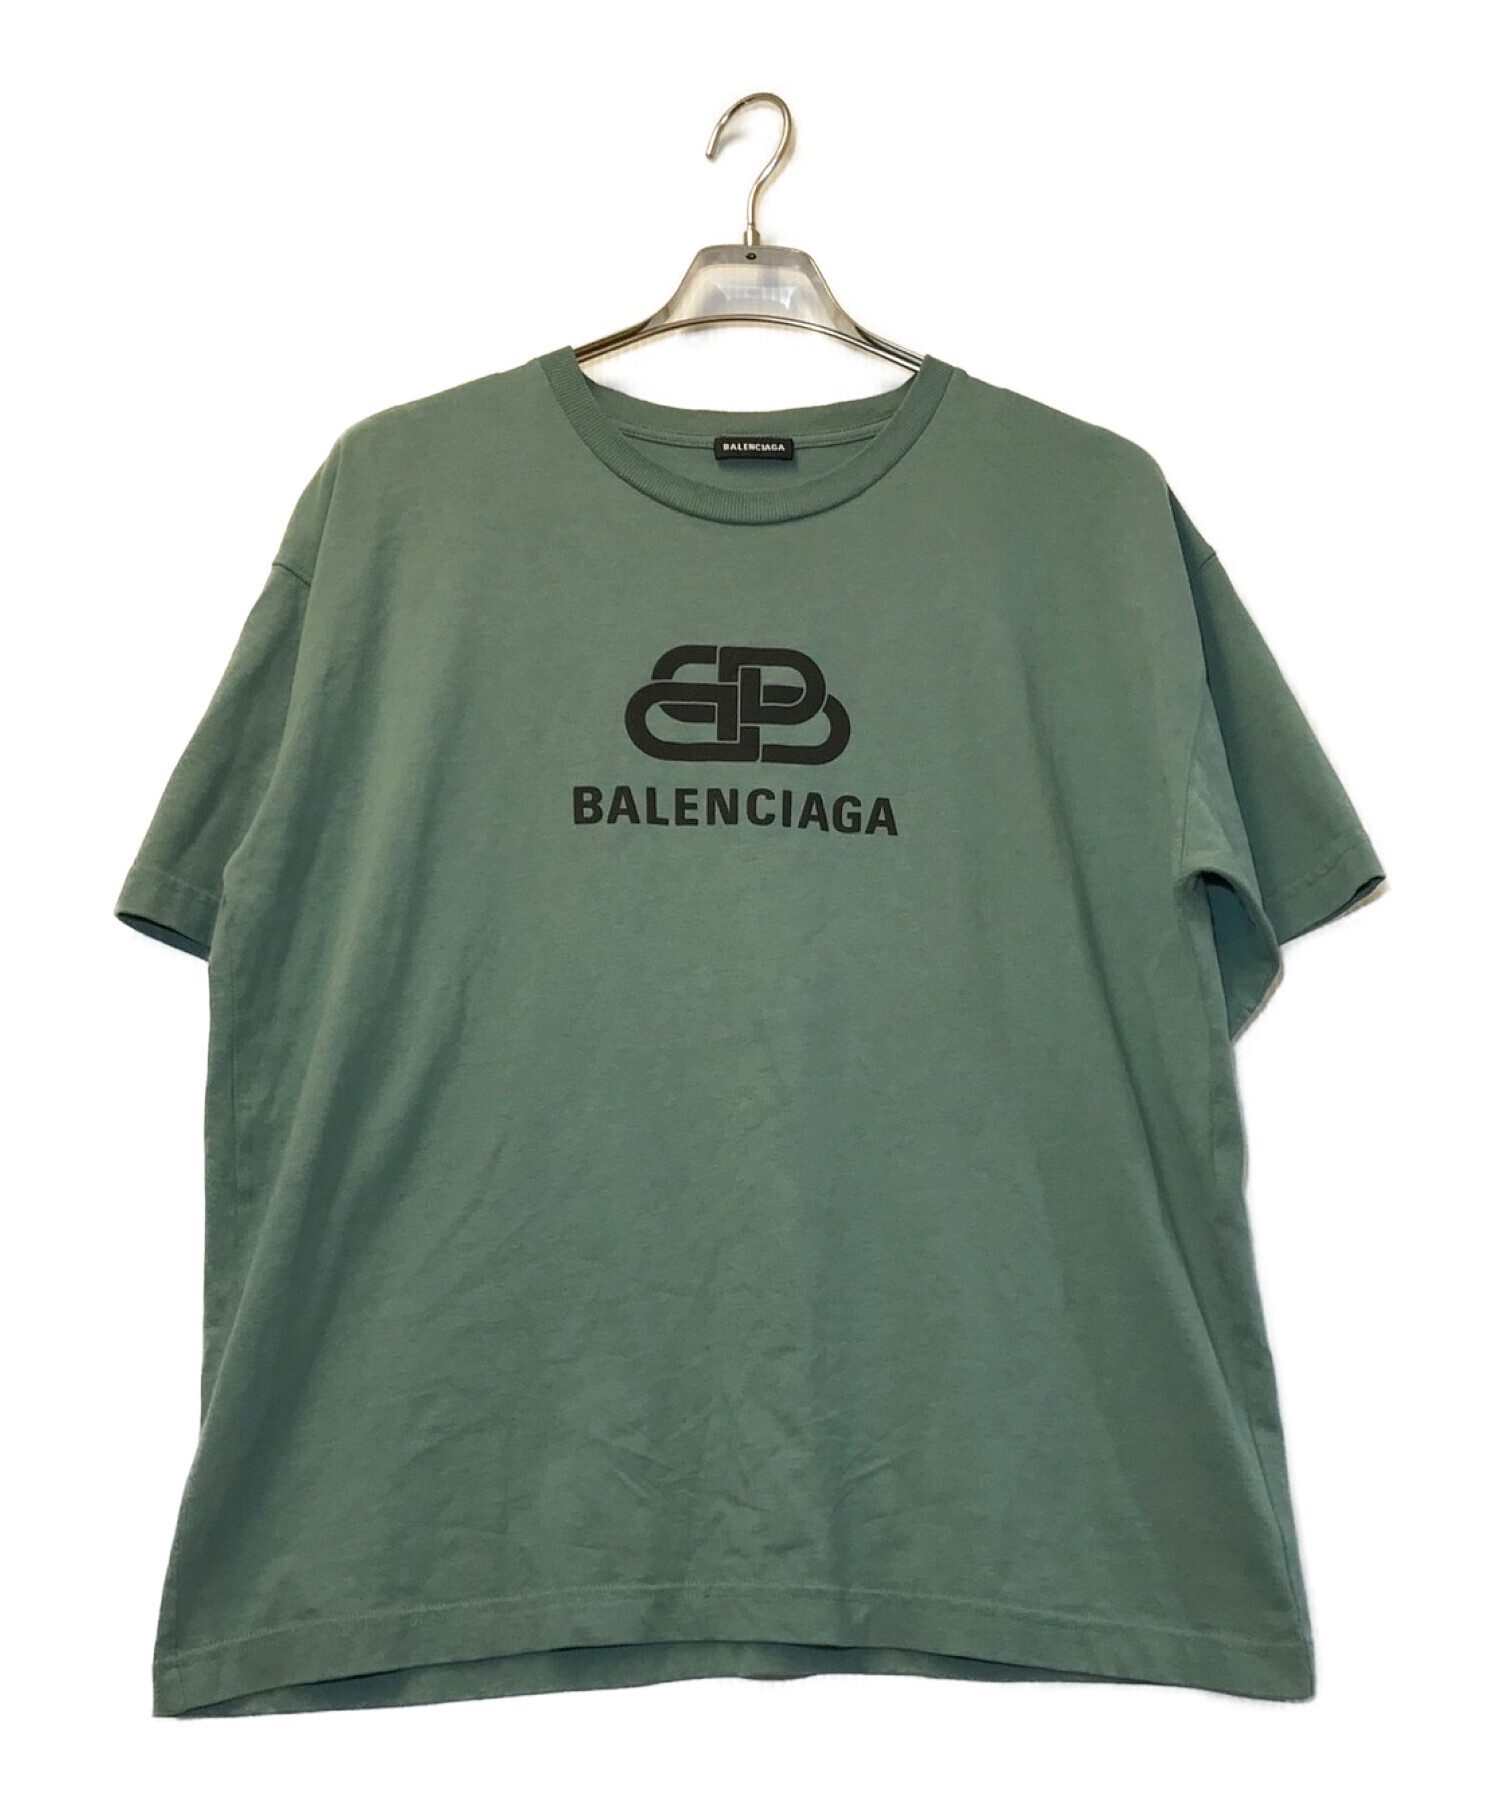 BALENCIAGA (バレンシアガ) BBロゴTシャツ グレー サイズ:M